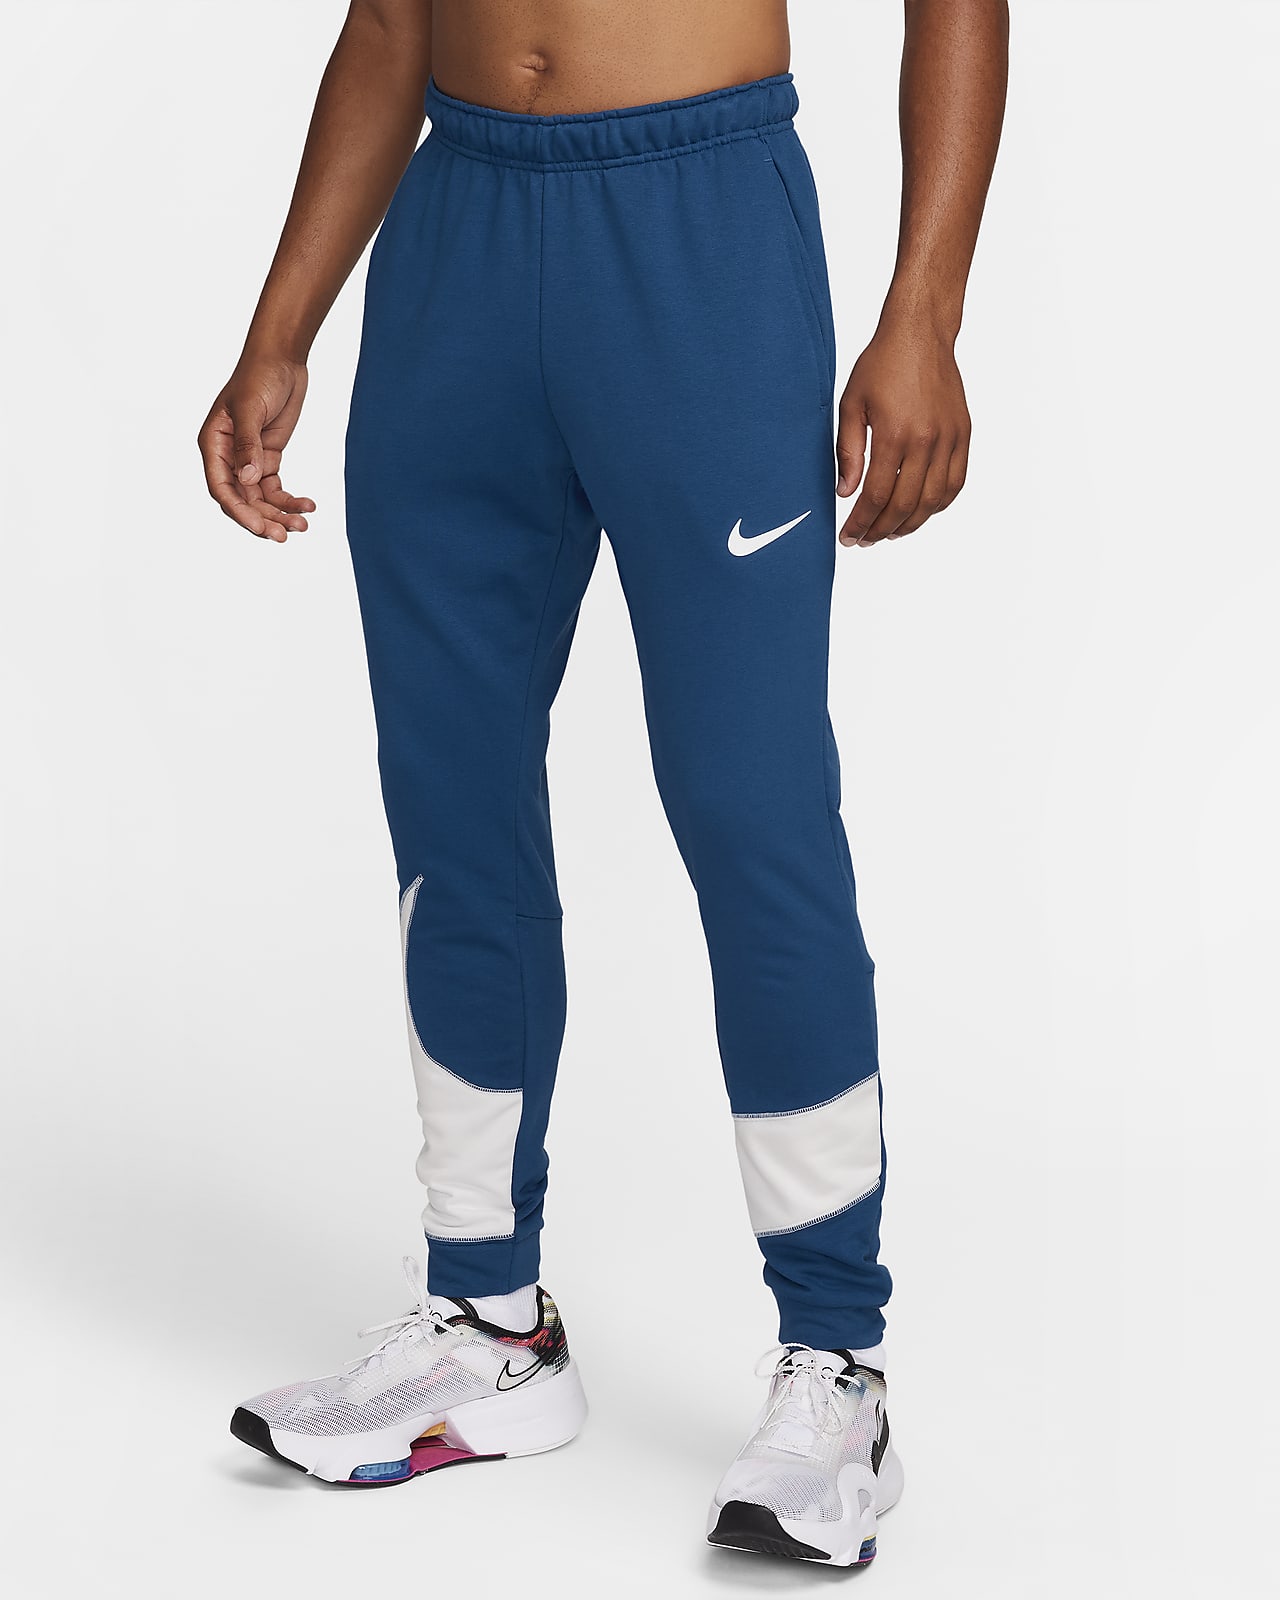 Pánské zúžené fitness kalhoty Nike Dri-FIT